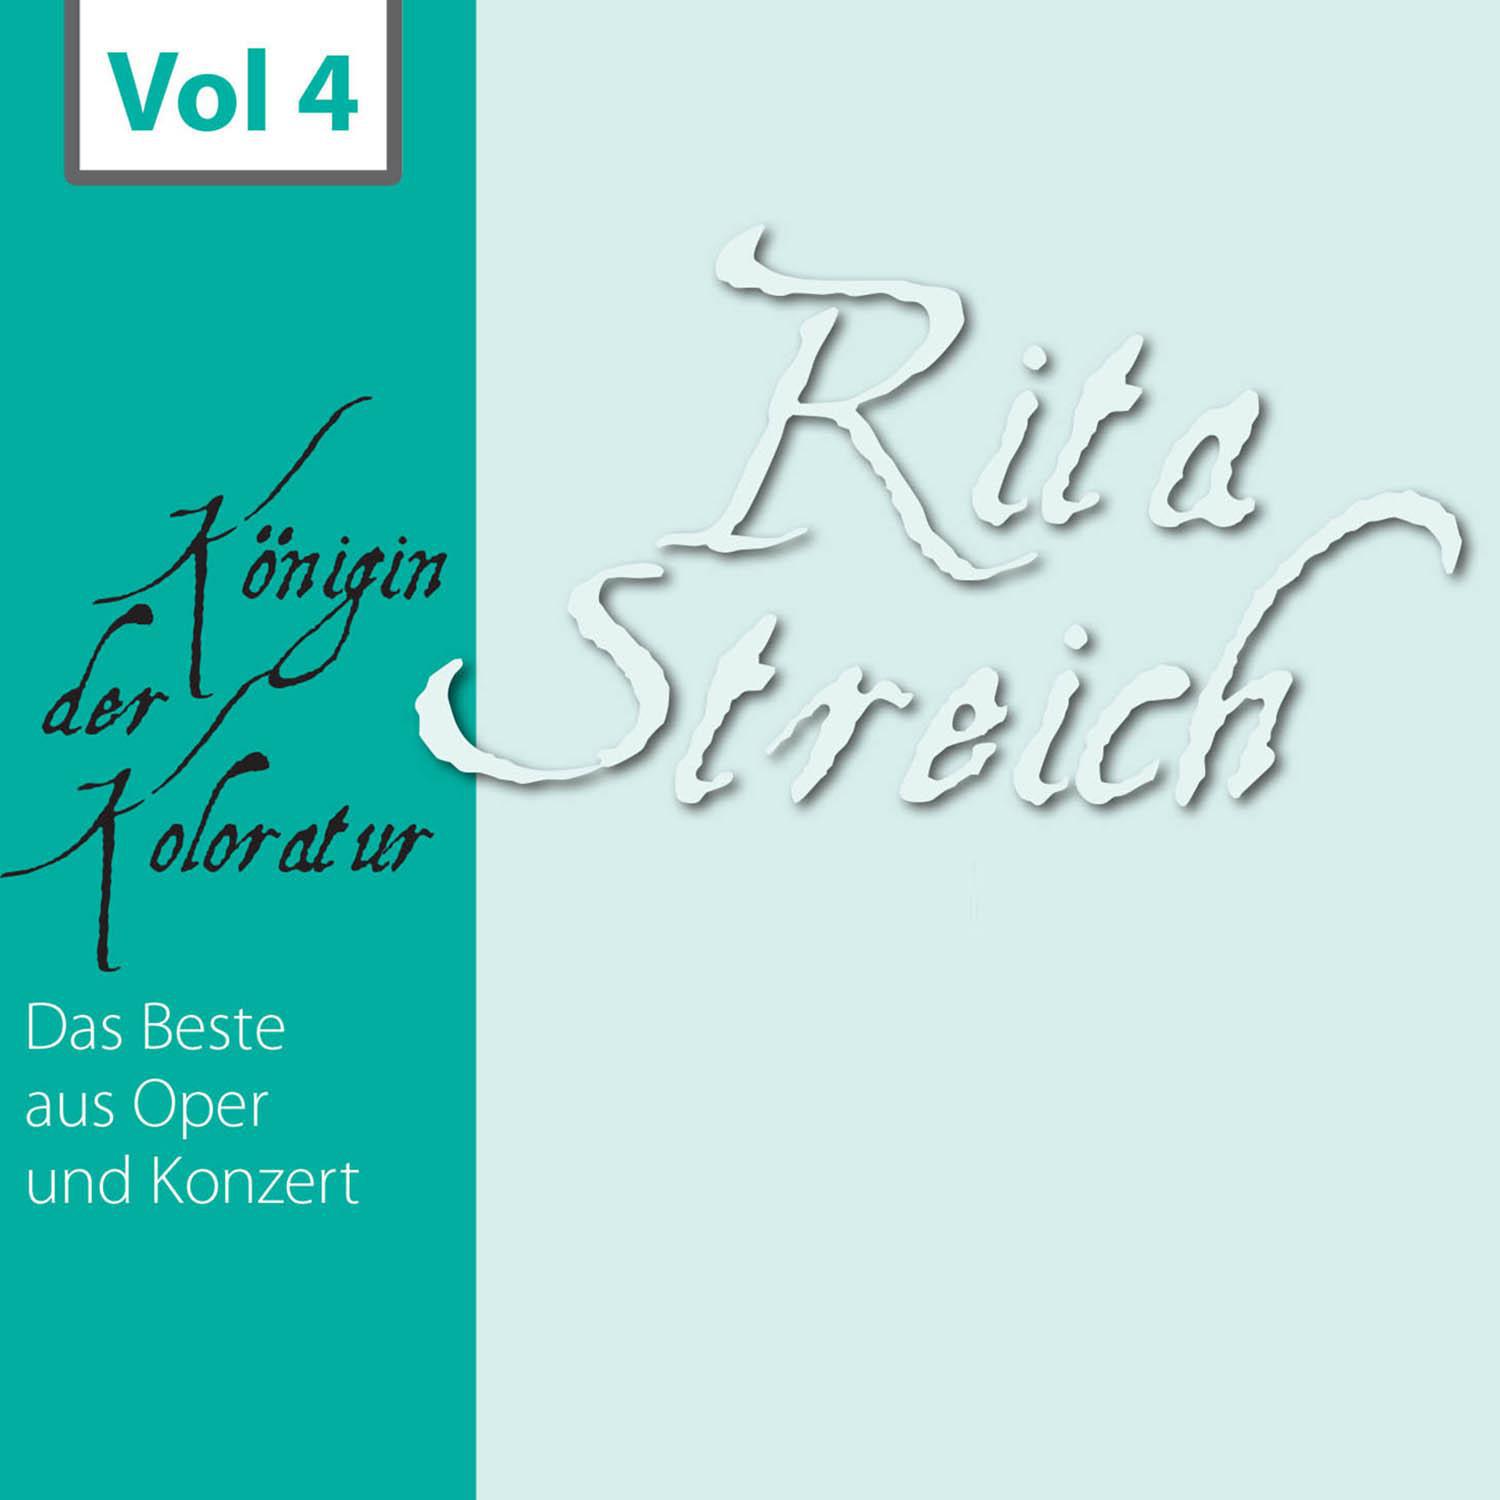 Rita Streich  K nigin der Koloratur, Vol. 4